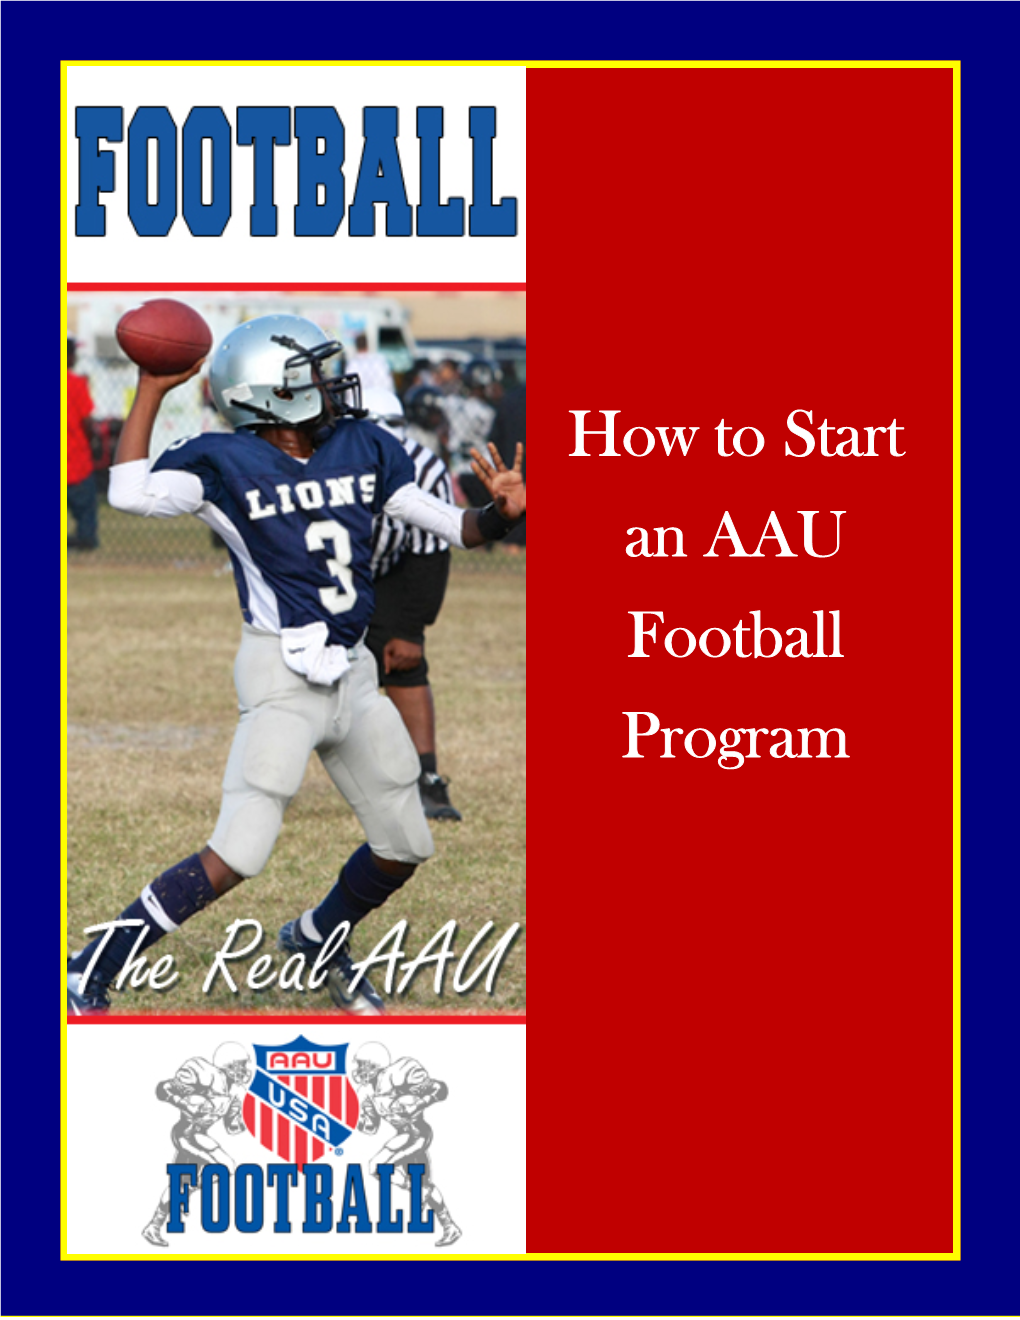 How to Start an AAU Football Program